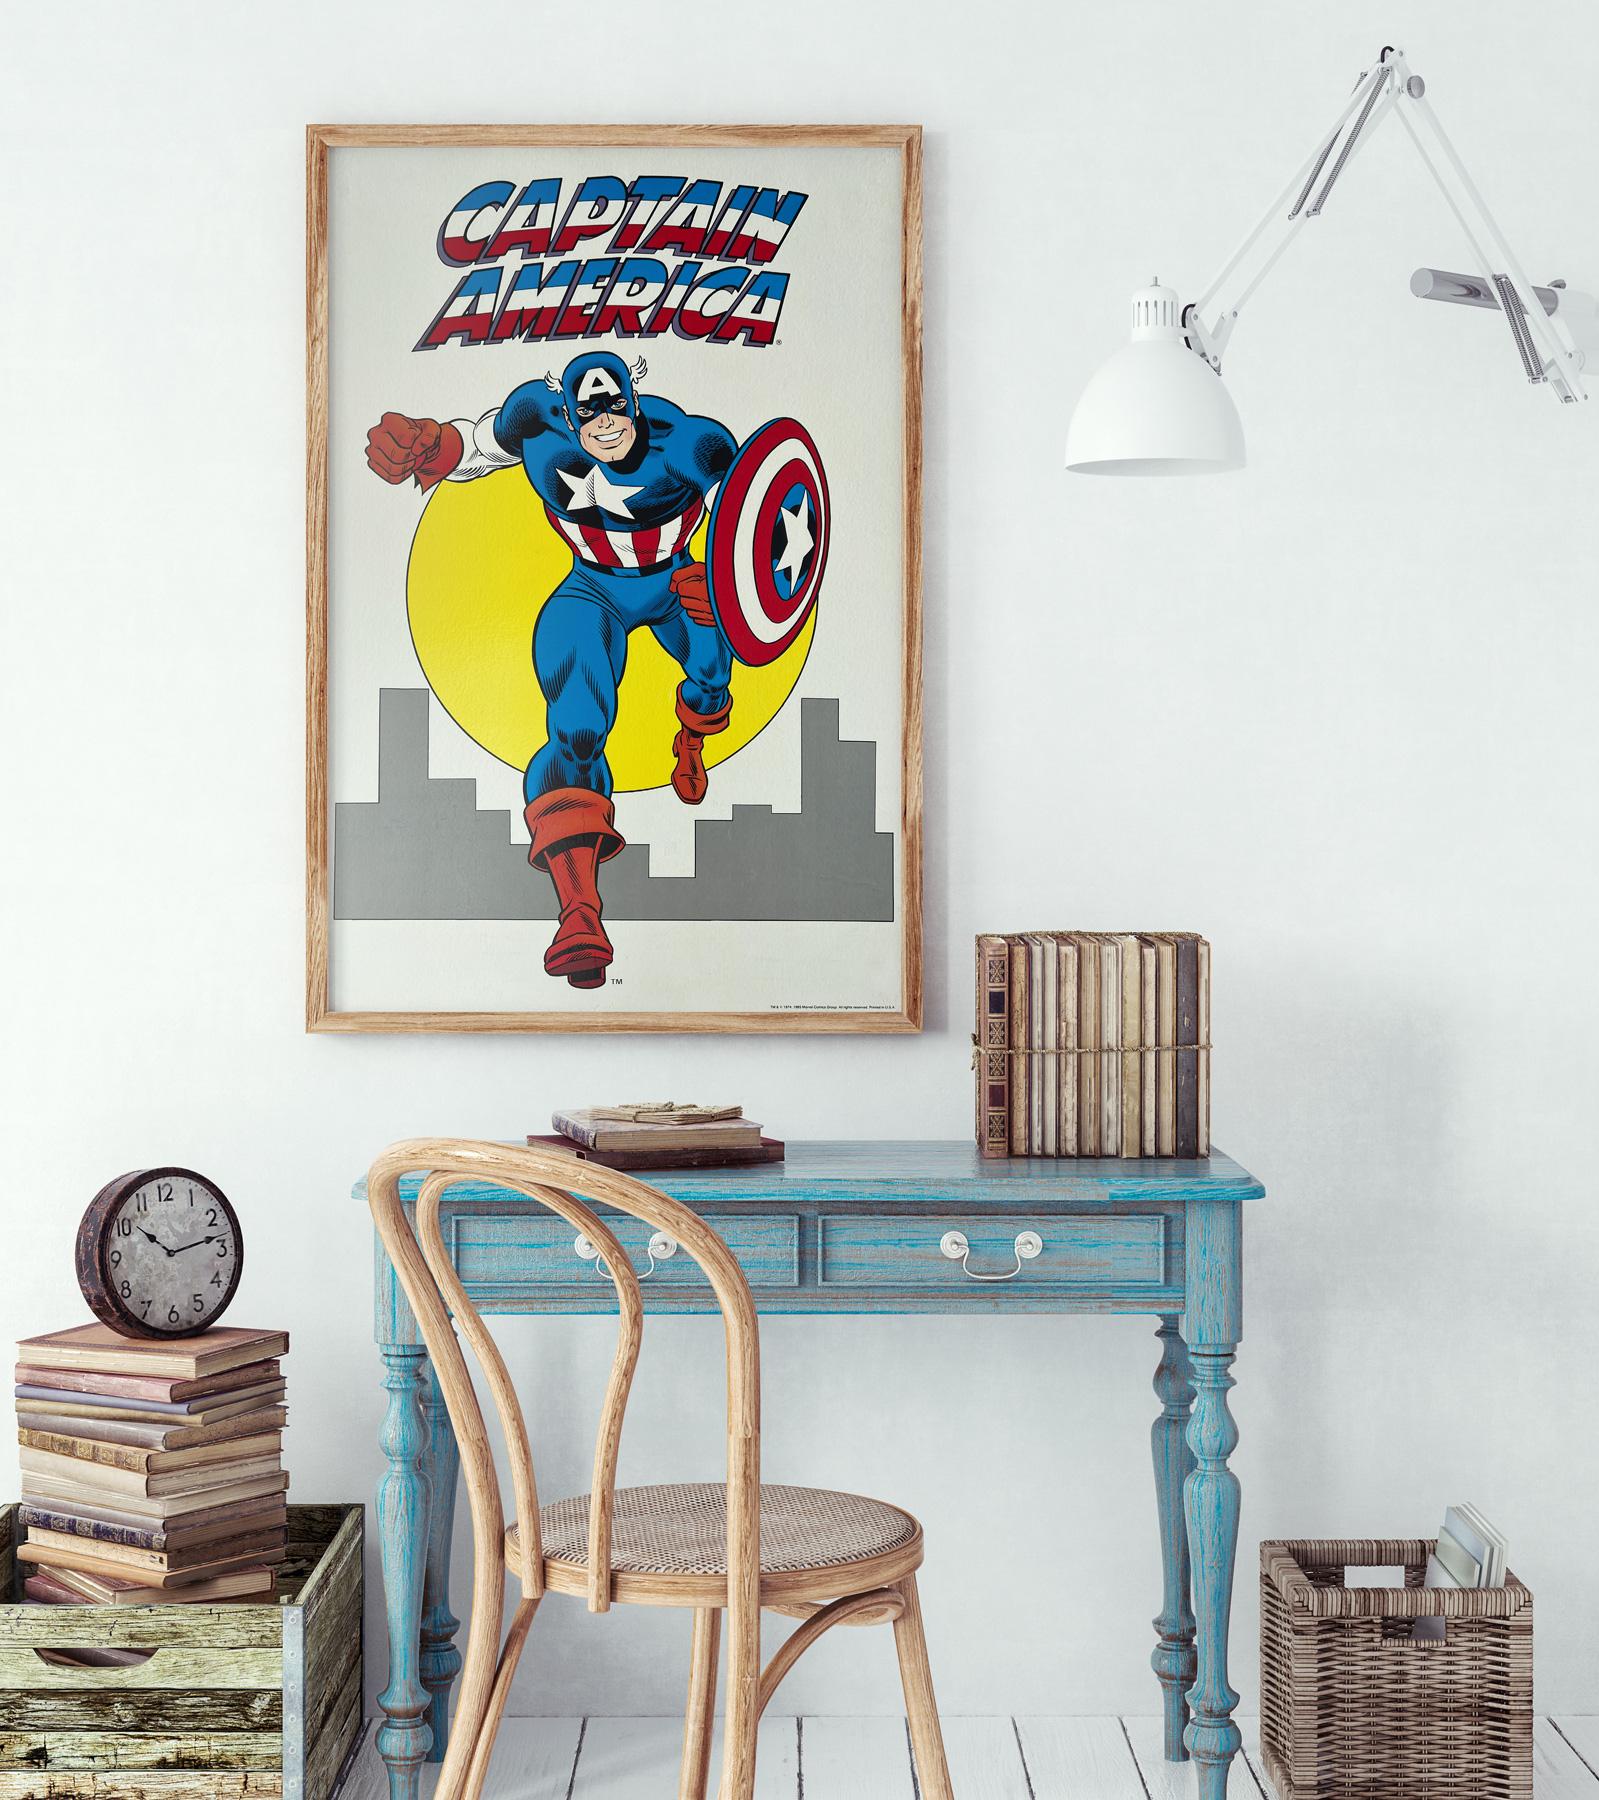 Magnifique affiche américaine vintage des années 1980 pour le film Captain America de Marvel. Super design et très cool.

Cette affiche vintage a été professionnellement nettoyée, désacidifiée et doublée de lin. Elle mesure 22 1/4 x 34 pouces (23